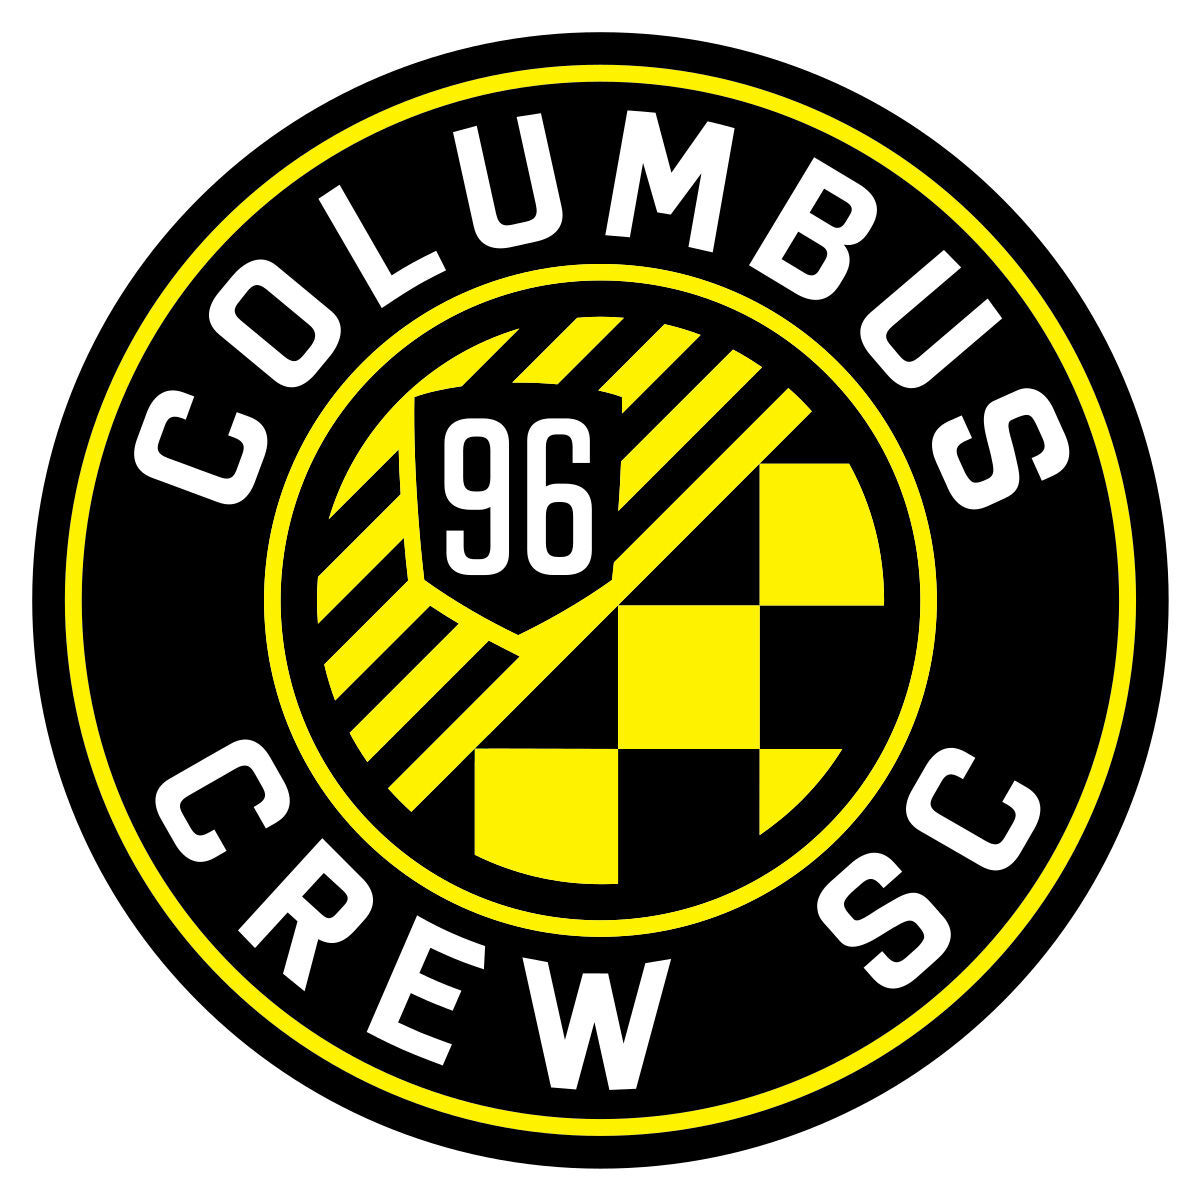 Columbus Crew win big in final game at Historic Crew Stadium